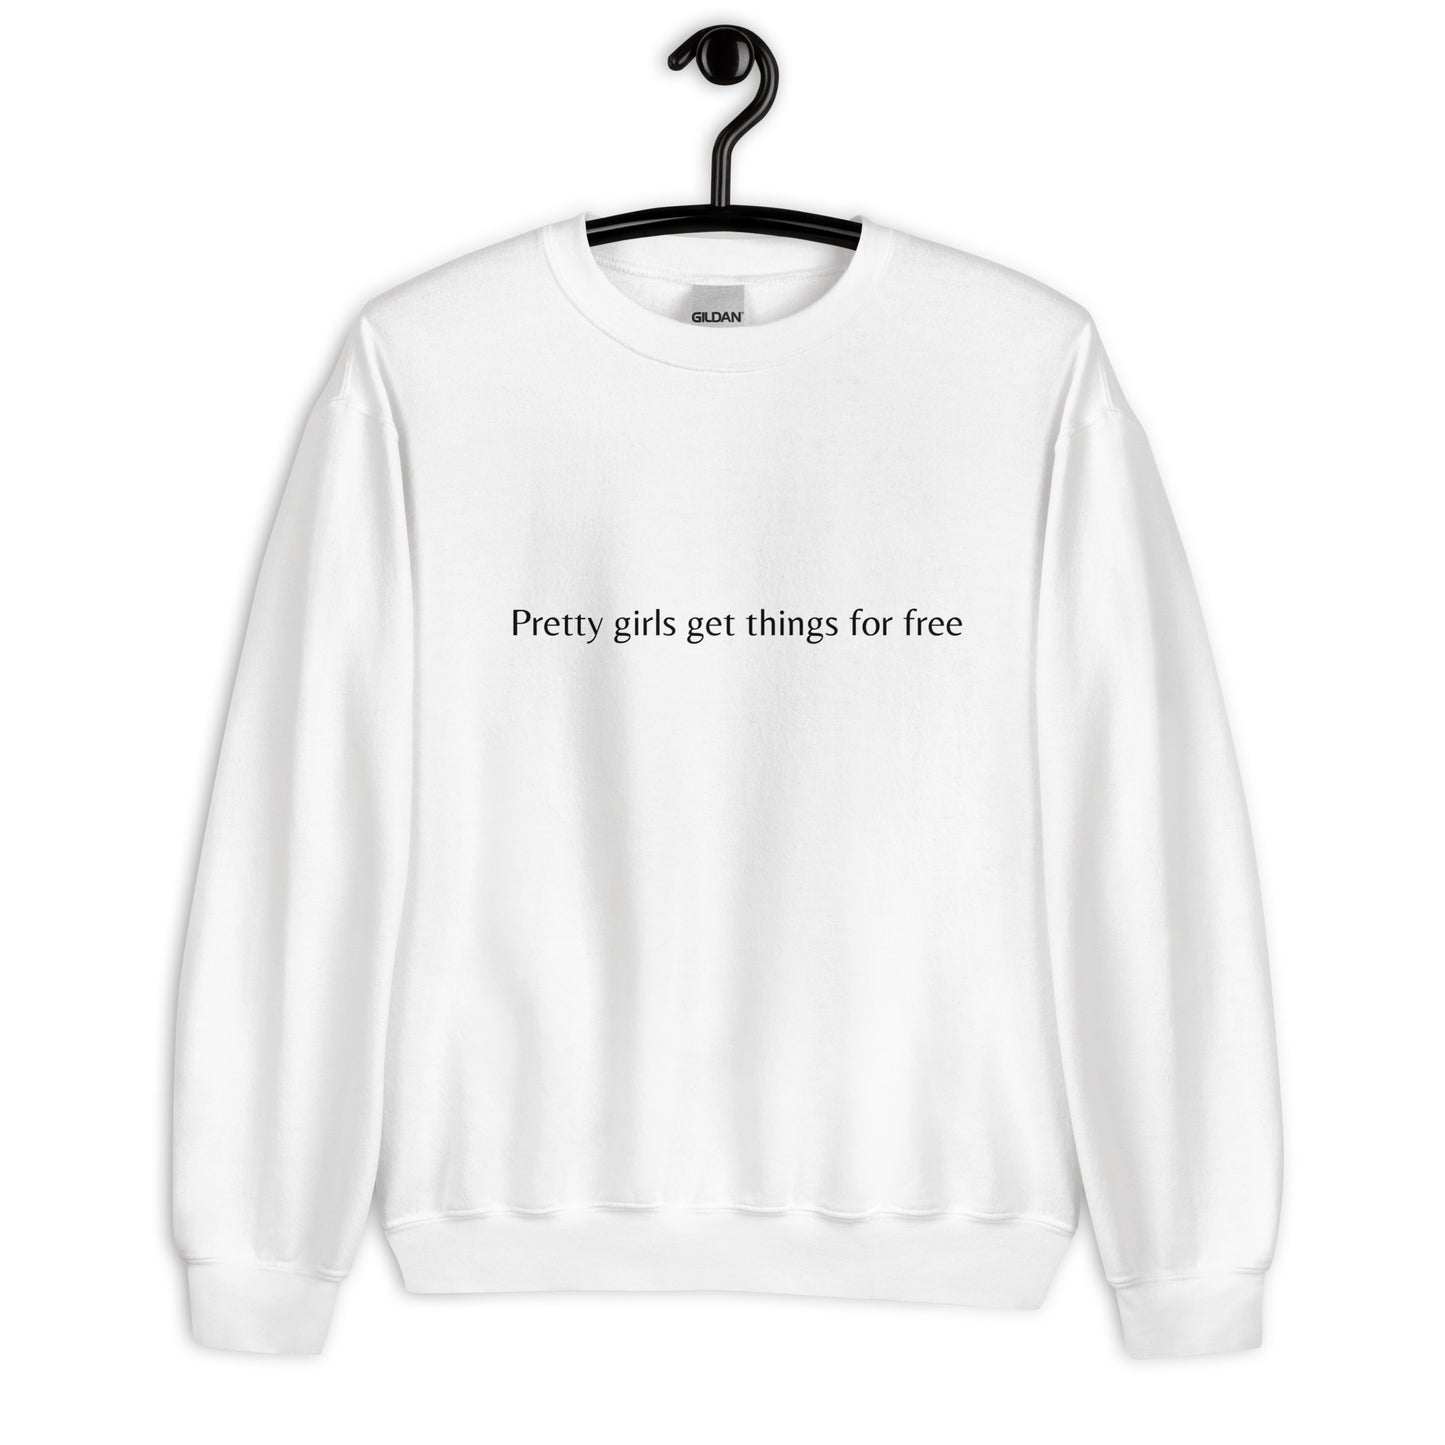 Pretty girls get things for free- Sweatshirt